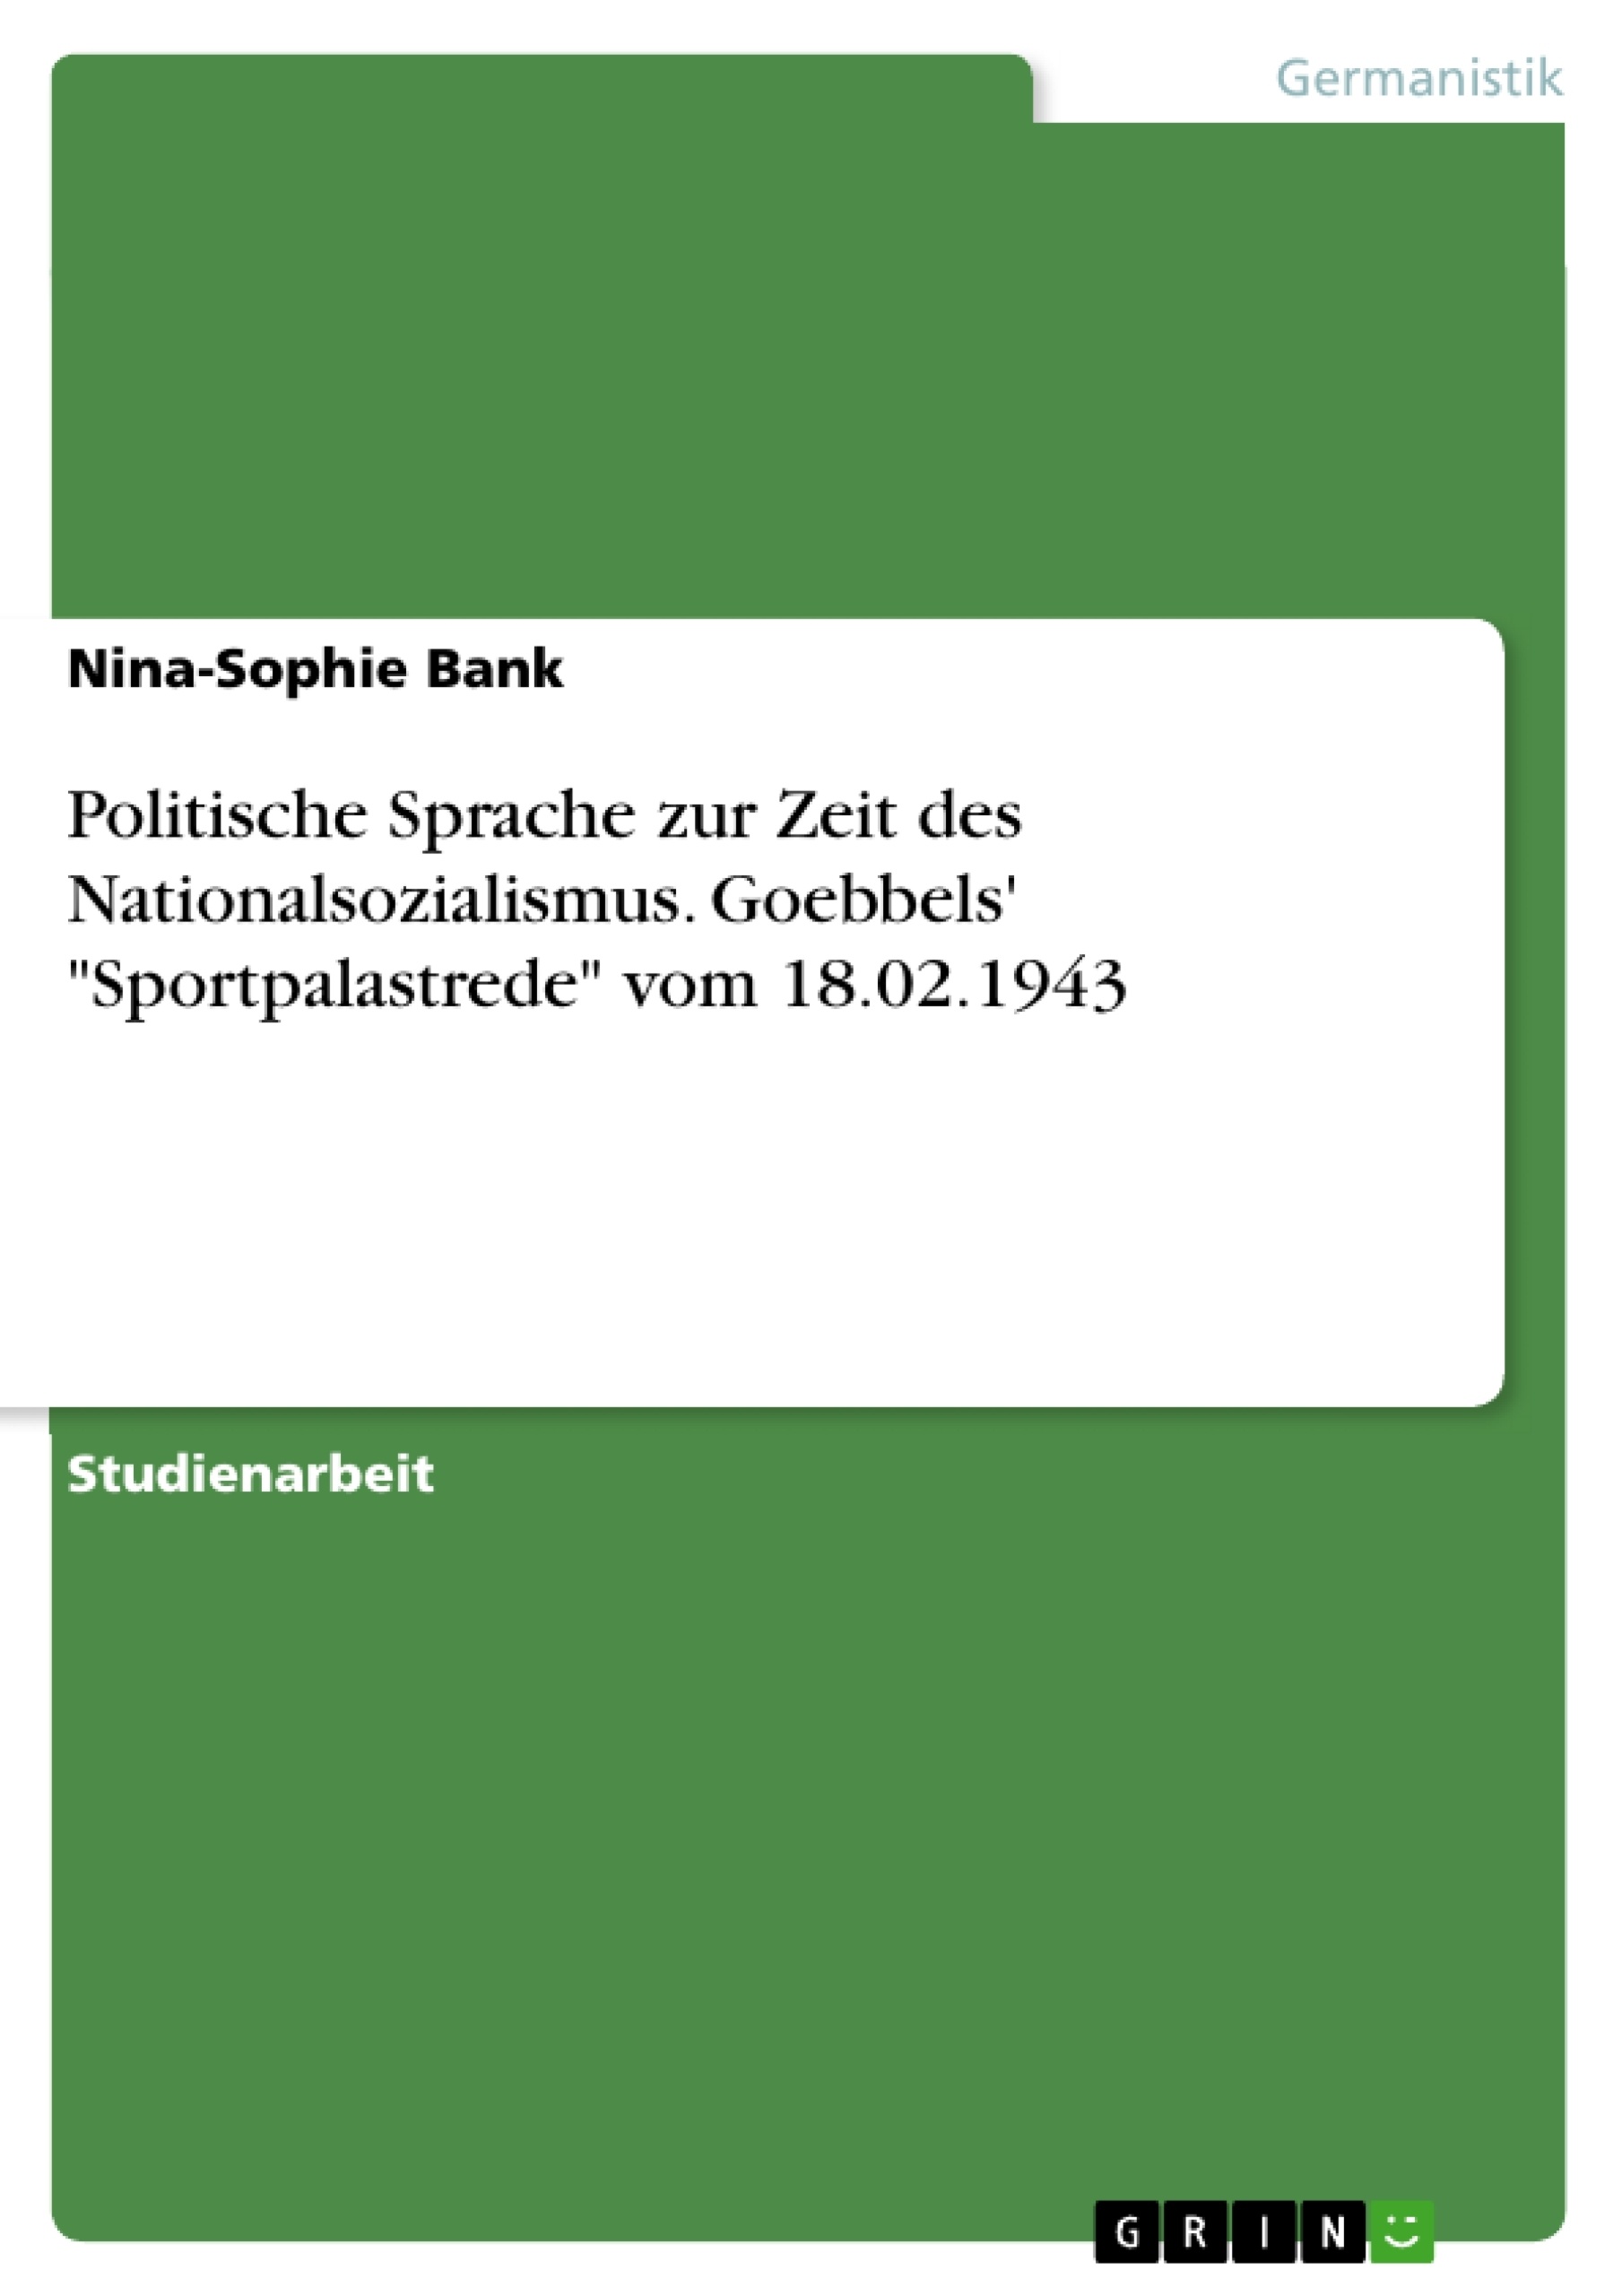 Titre: Politische Sprache zur Zeit des Nationalsozialismus. Goebbels' "Sportpalastrede" vom 18.02.1943